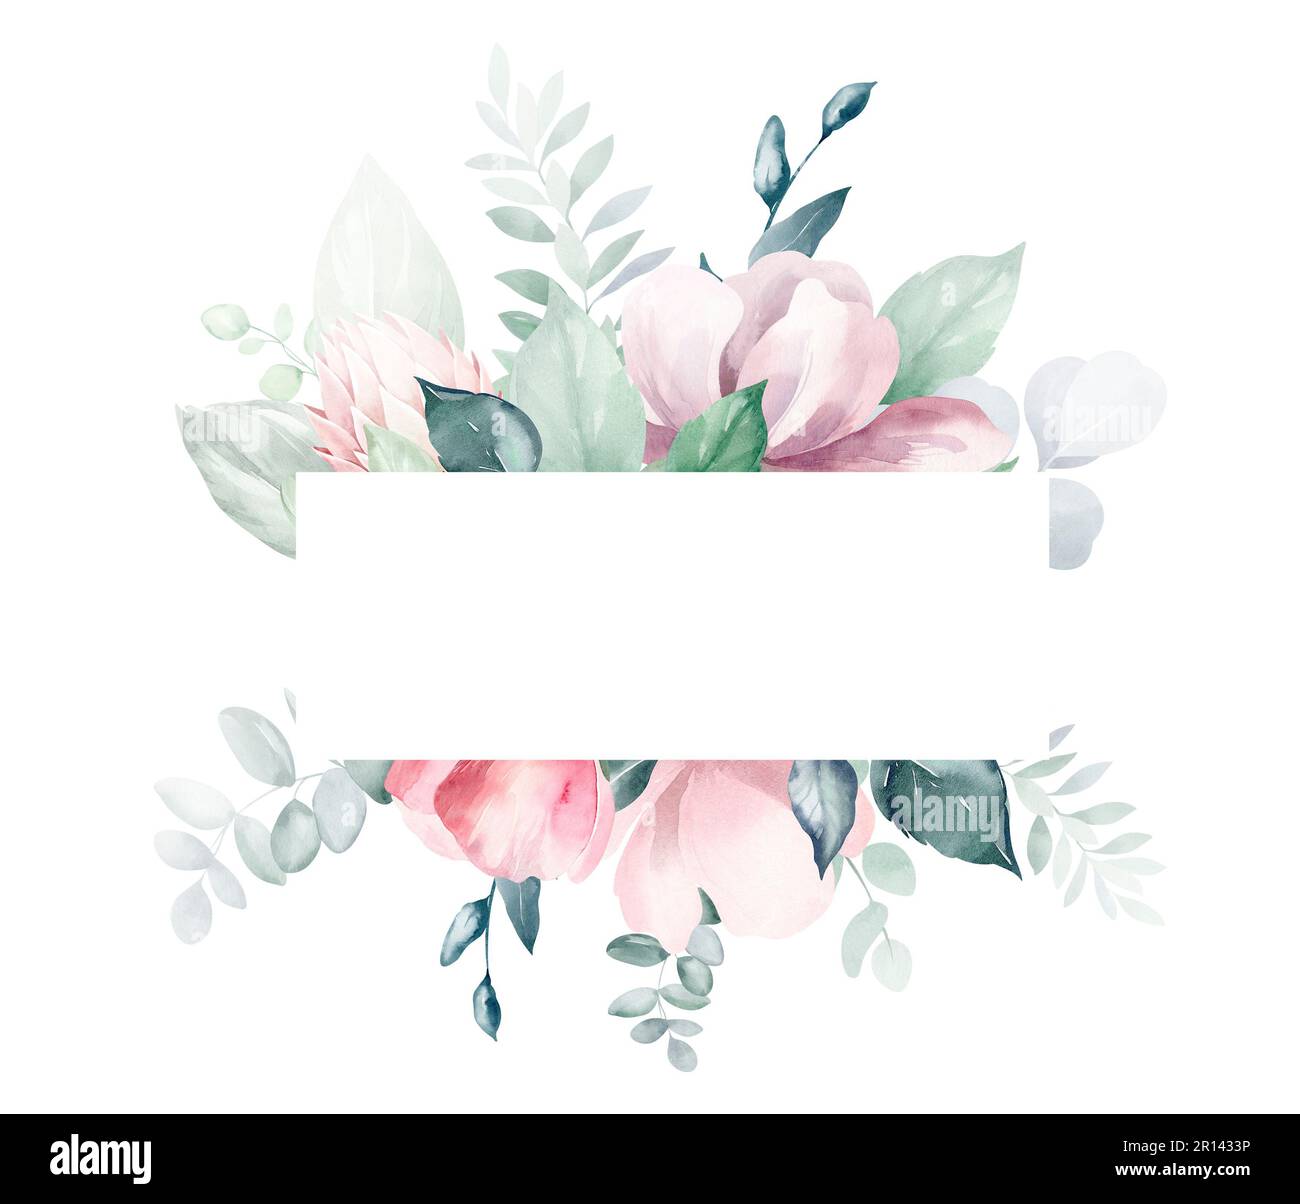 Ensemble d'illustrations de bouquet de fleurs aquarelles - rose pâle, vert, fleur rose, feuilles vertes, branches de bouquets collection. Poste de mariage Banque D'Images